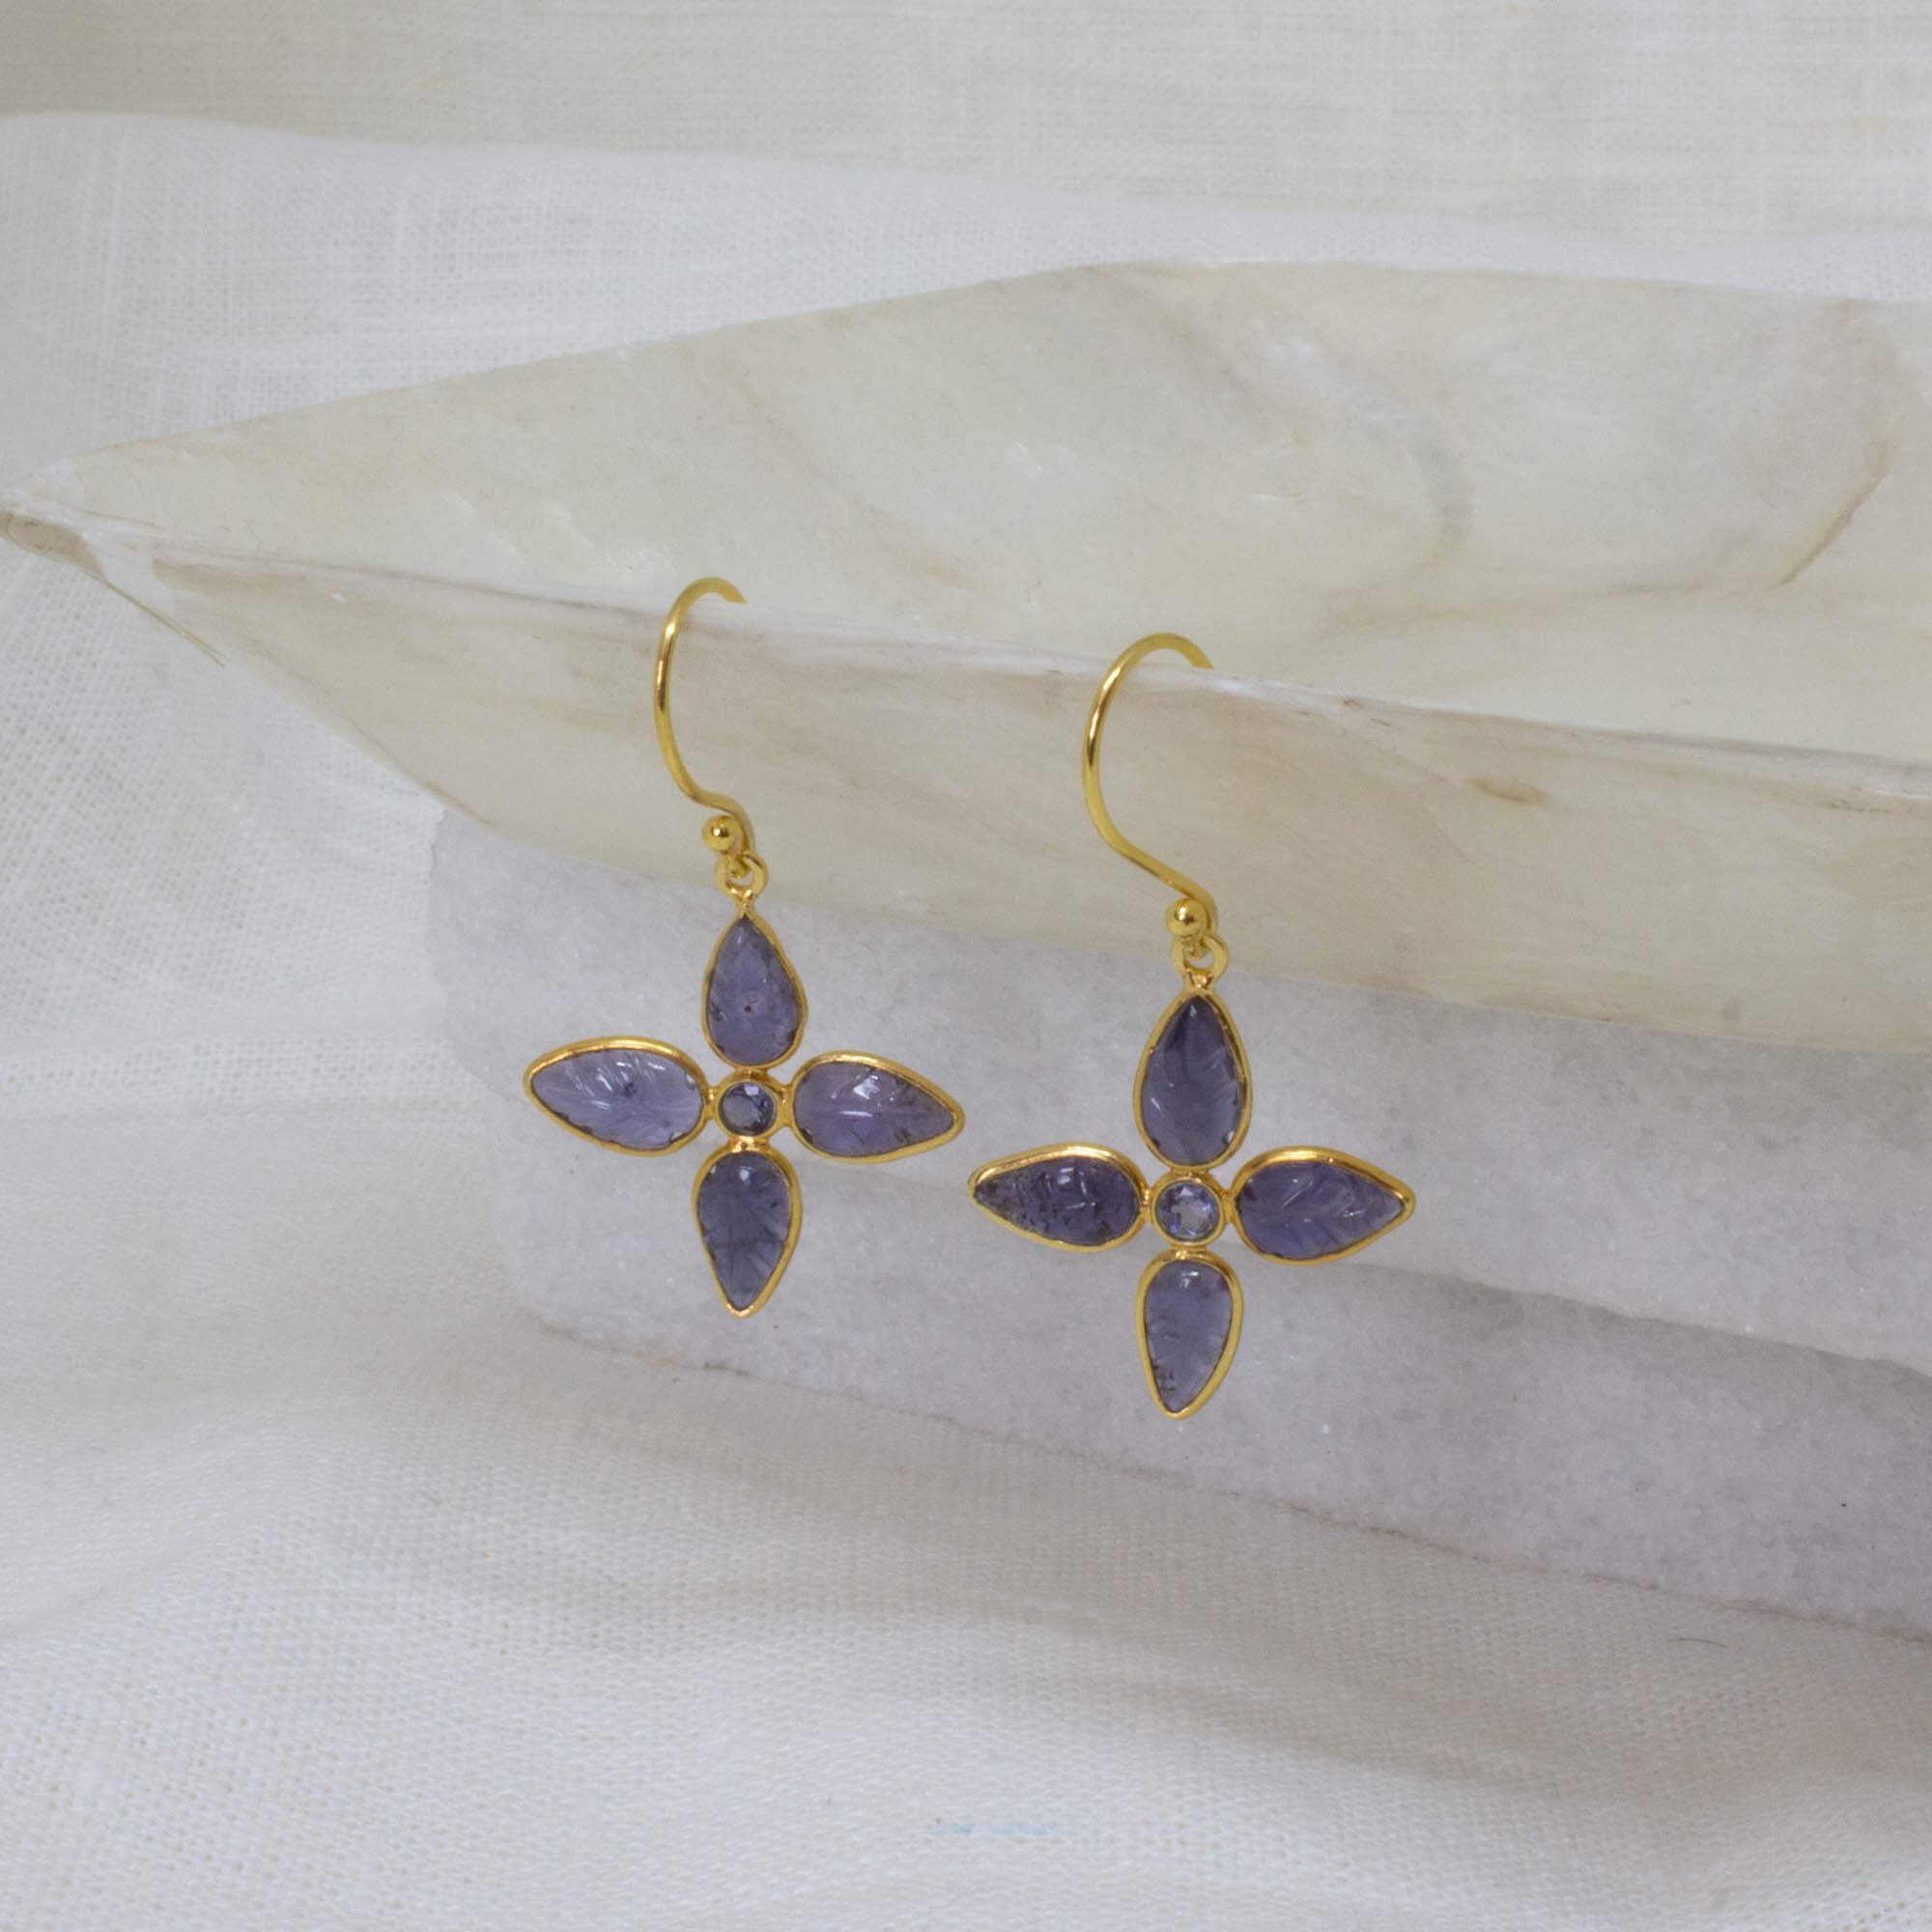 Carved iolite gemstone flower earrings in 18k gold vermeil - Beyond Biasa